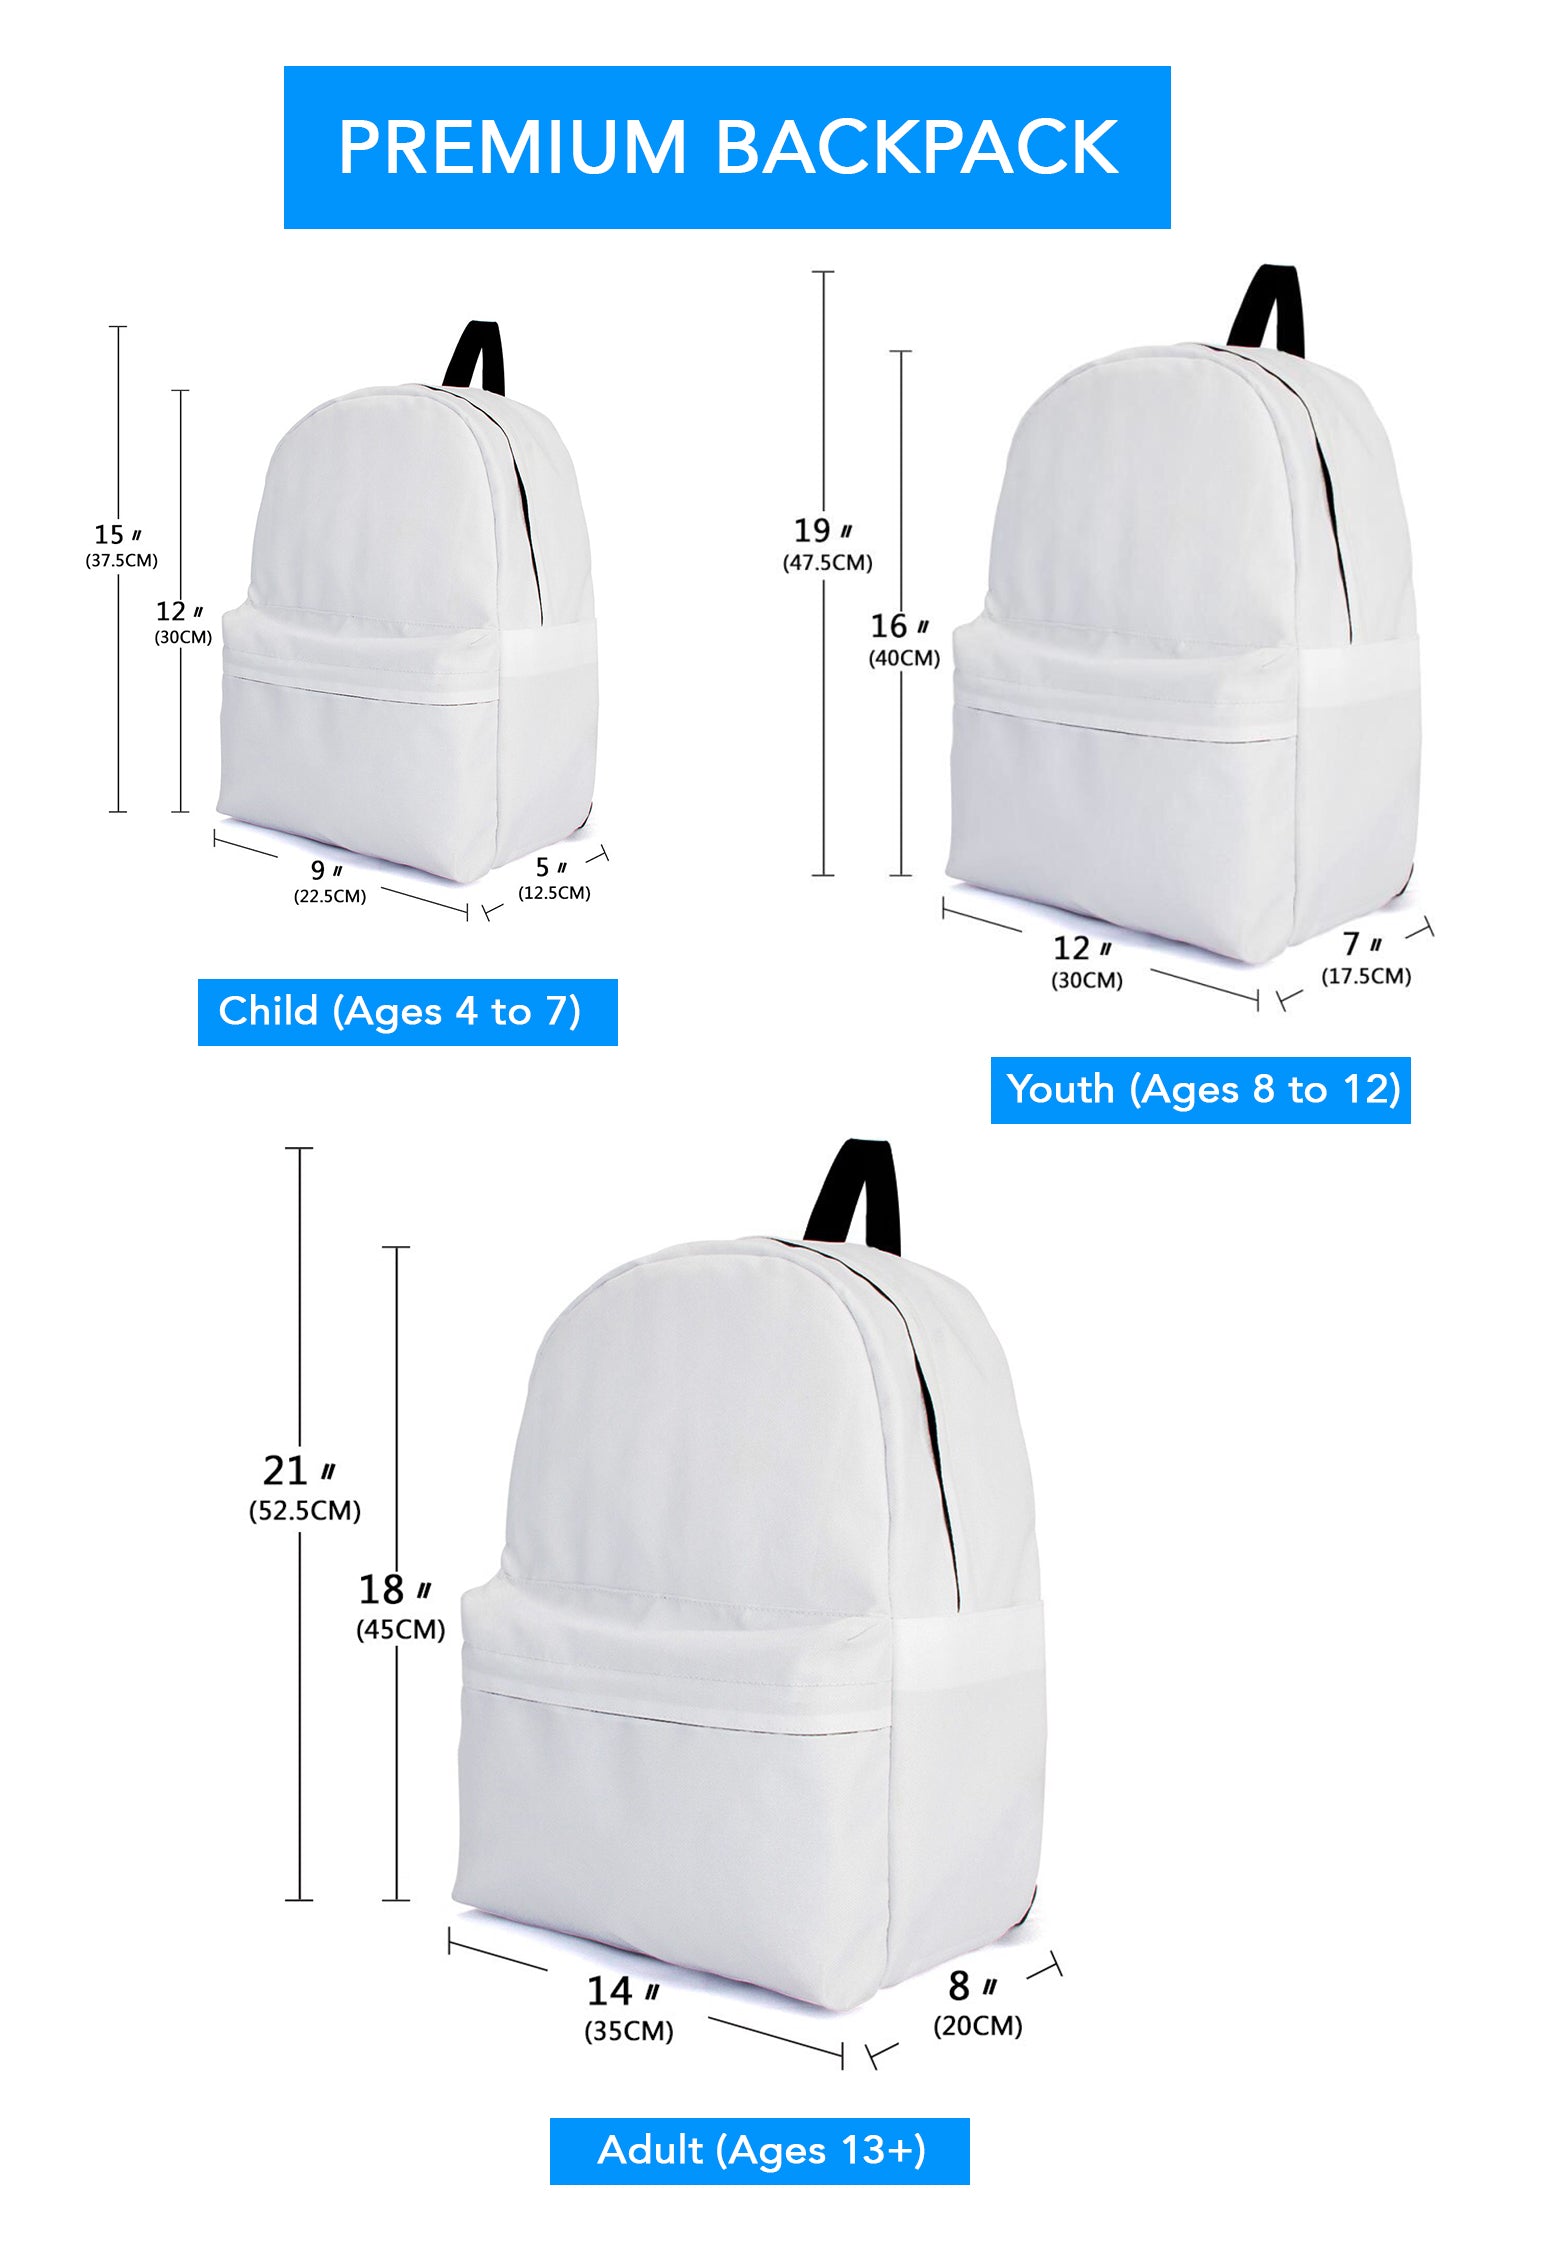 Abercrombie Family Tartan Crest Backpack